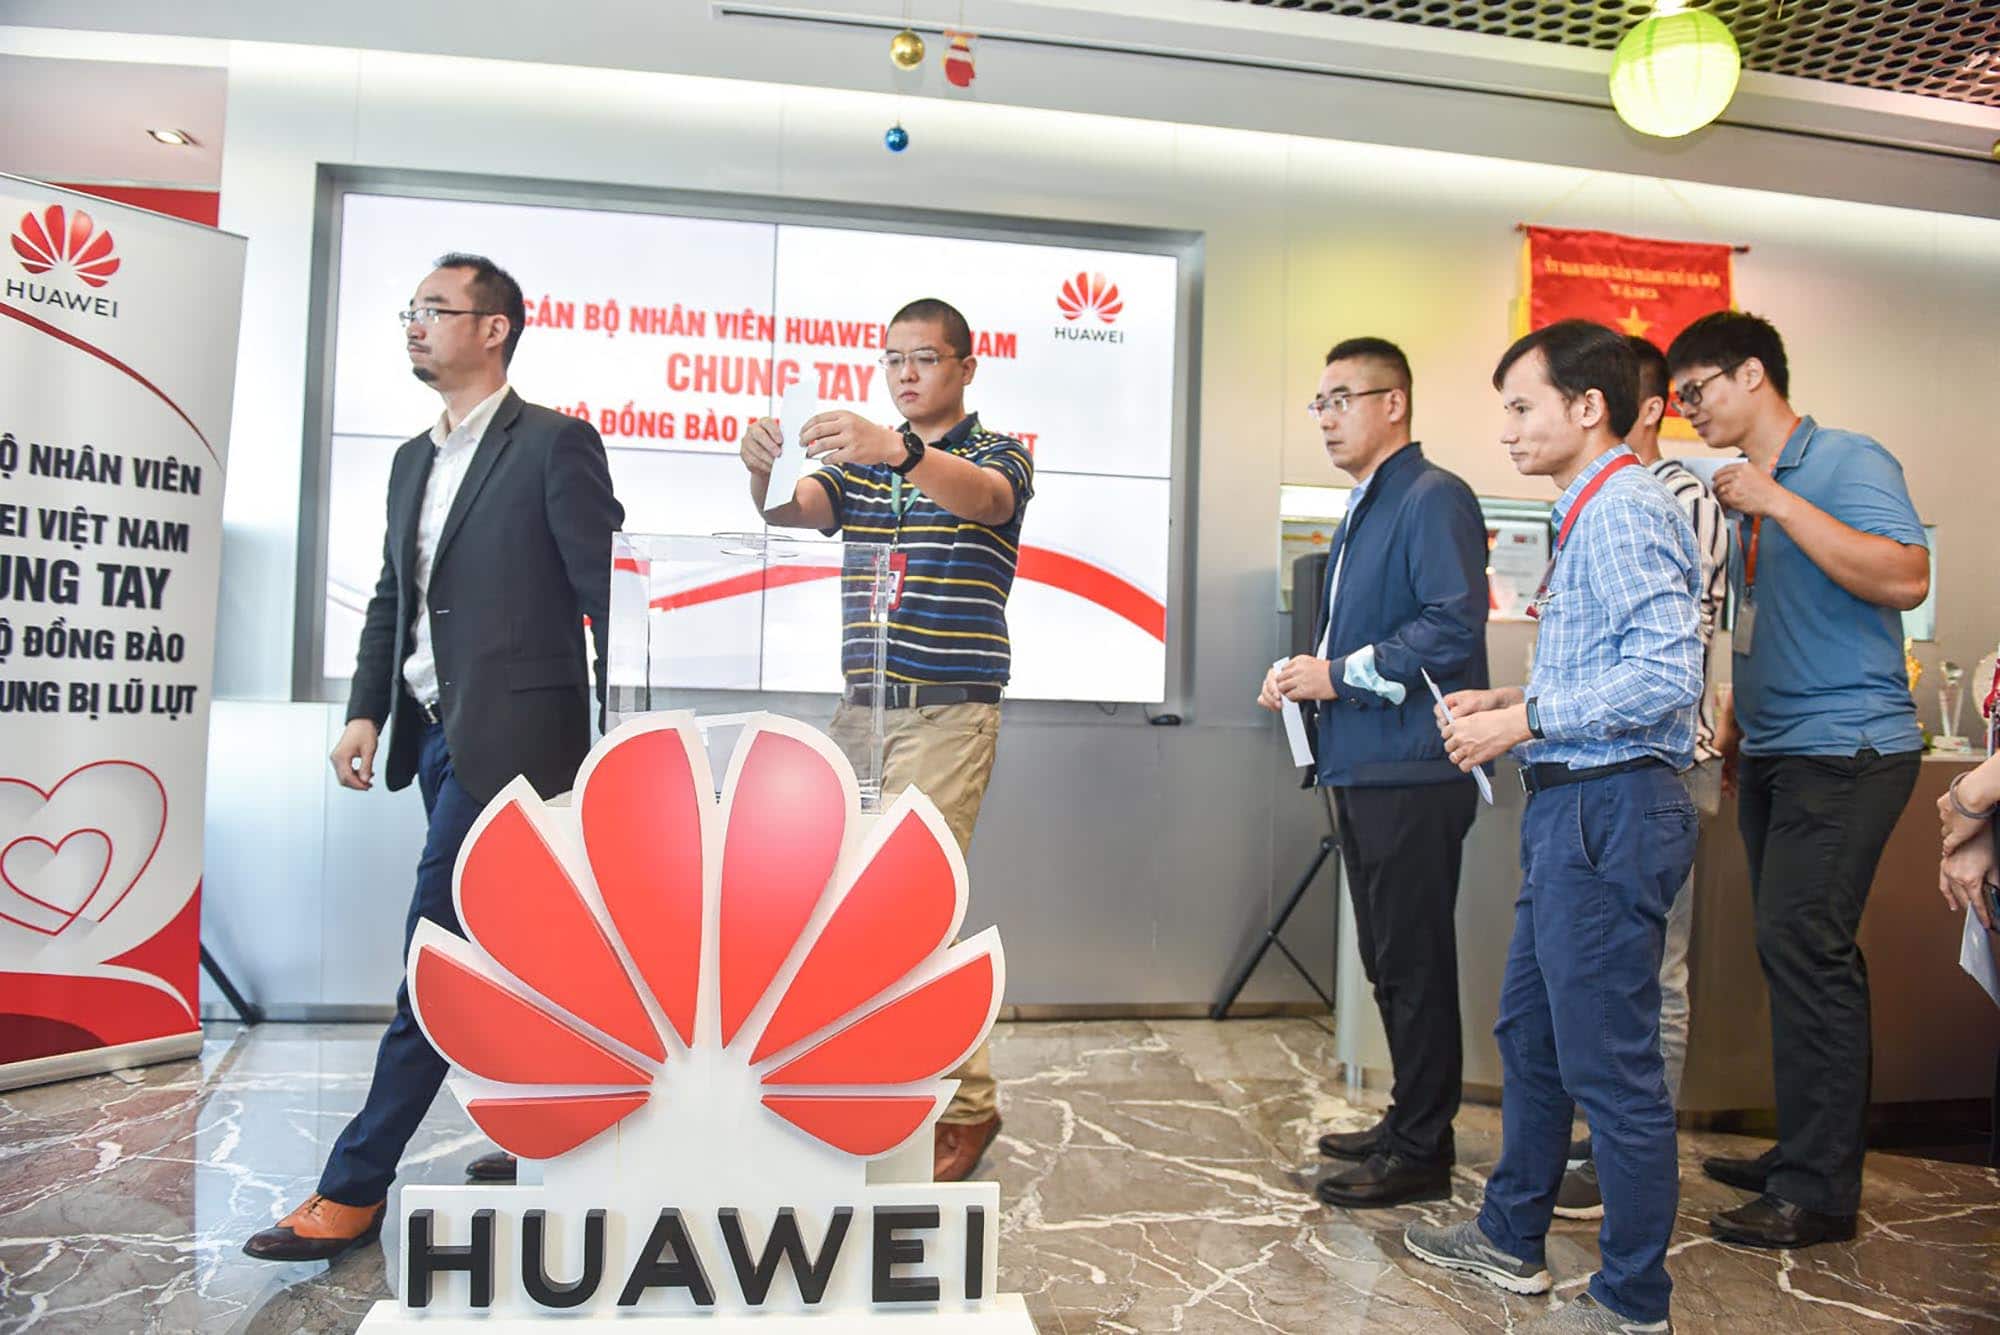 Huawei Việt Nam chung tay ủng hộ đồng bào miền Trung 1 tỷ đồng